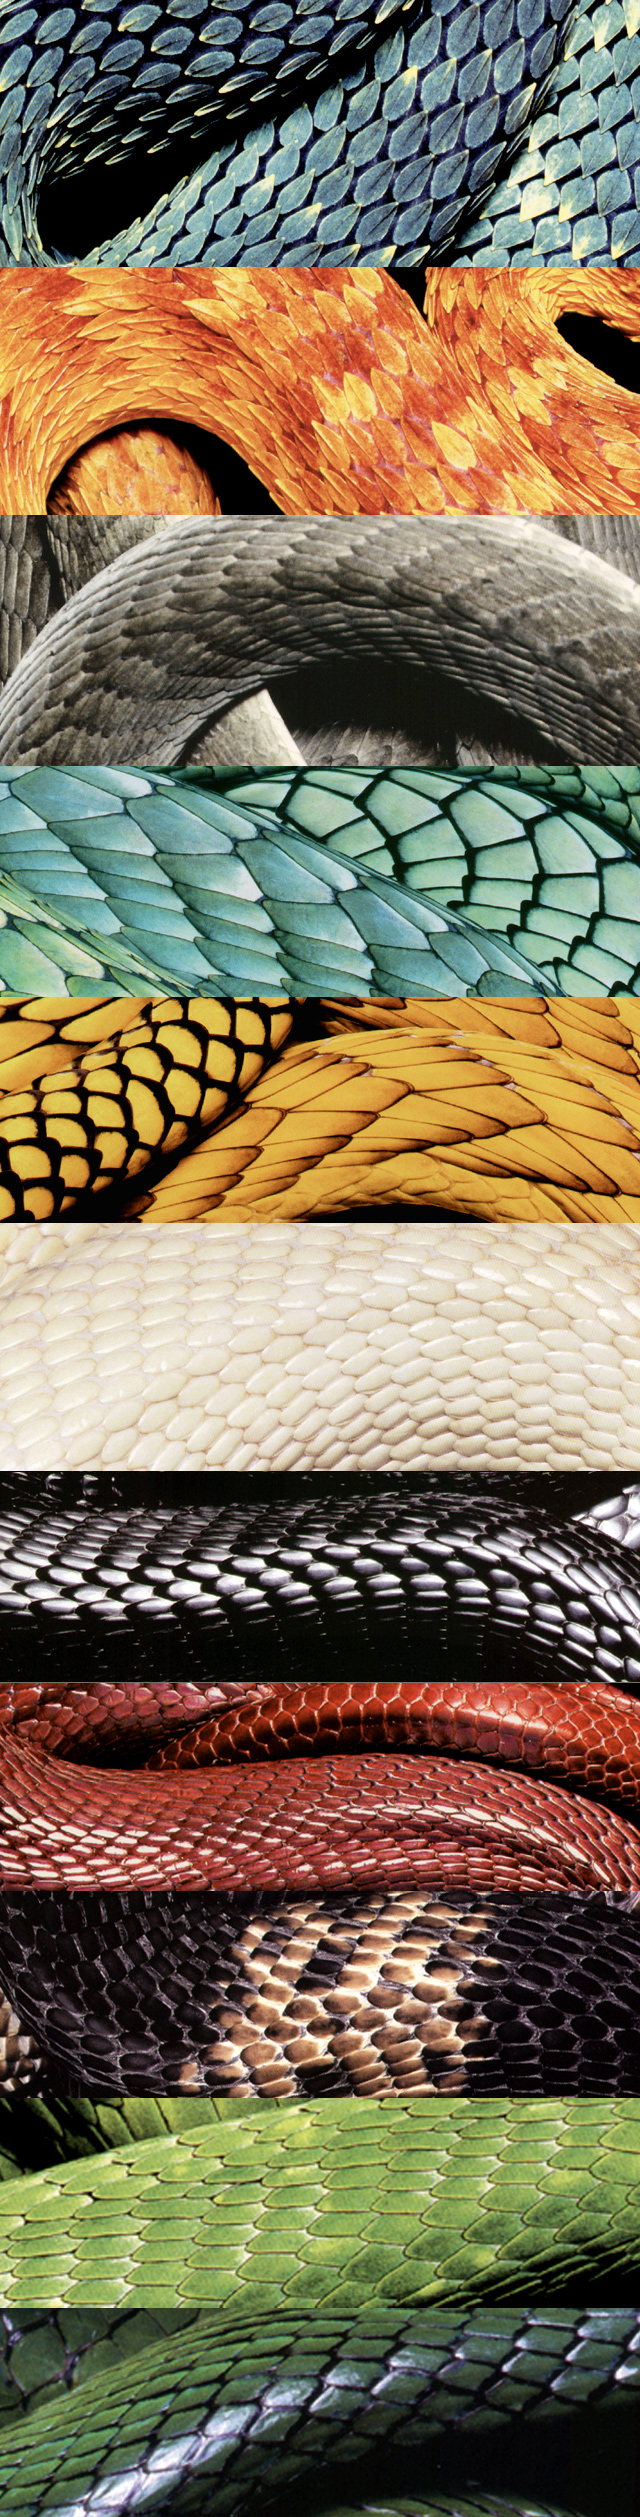 Échantillons de type de peaux de serpent géant de G-Tol